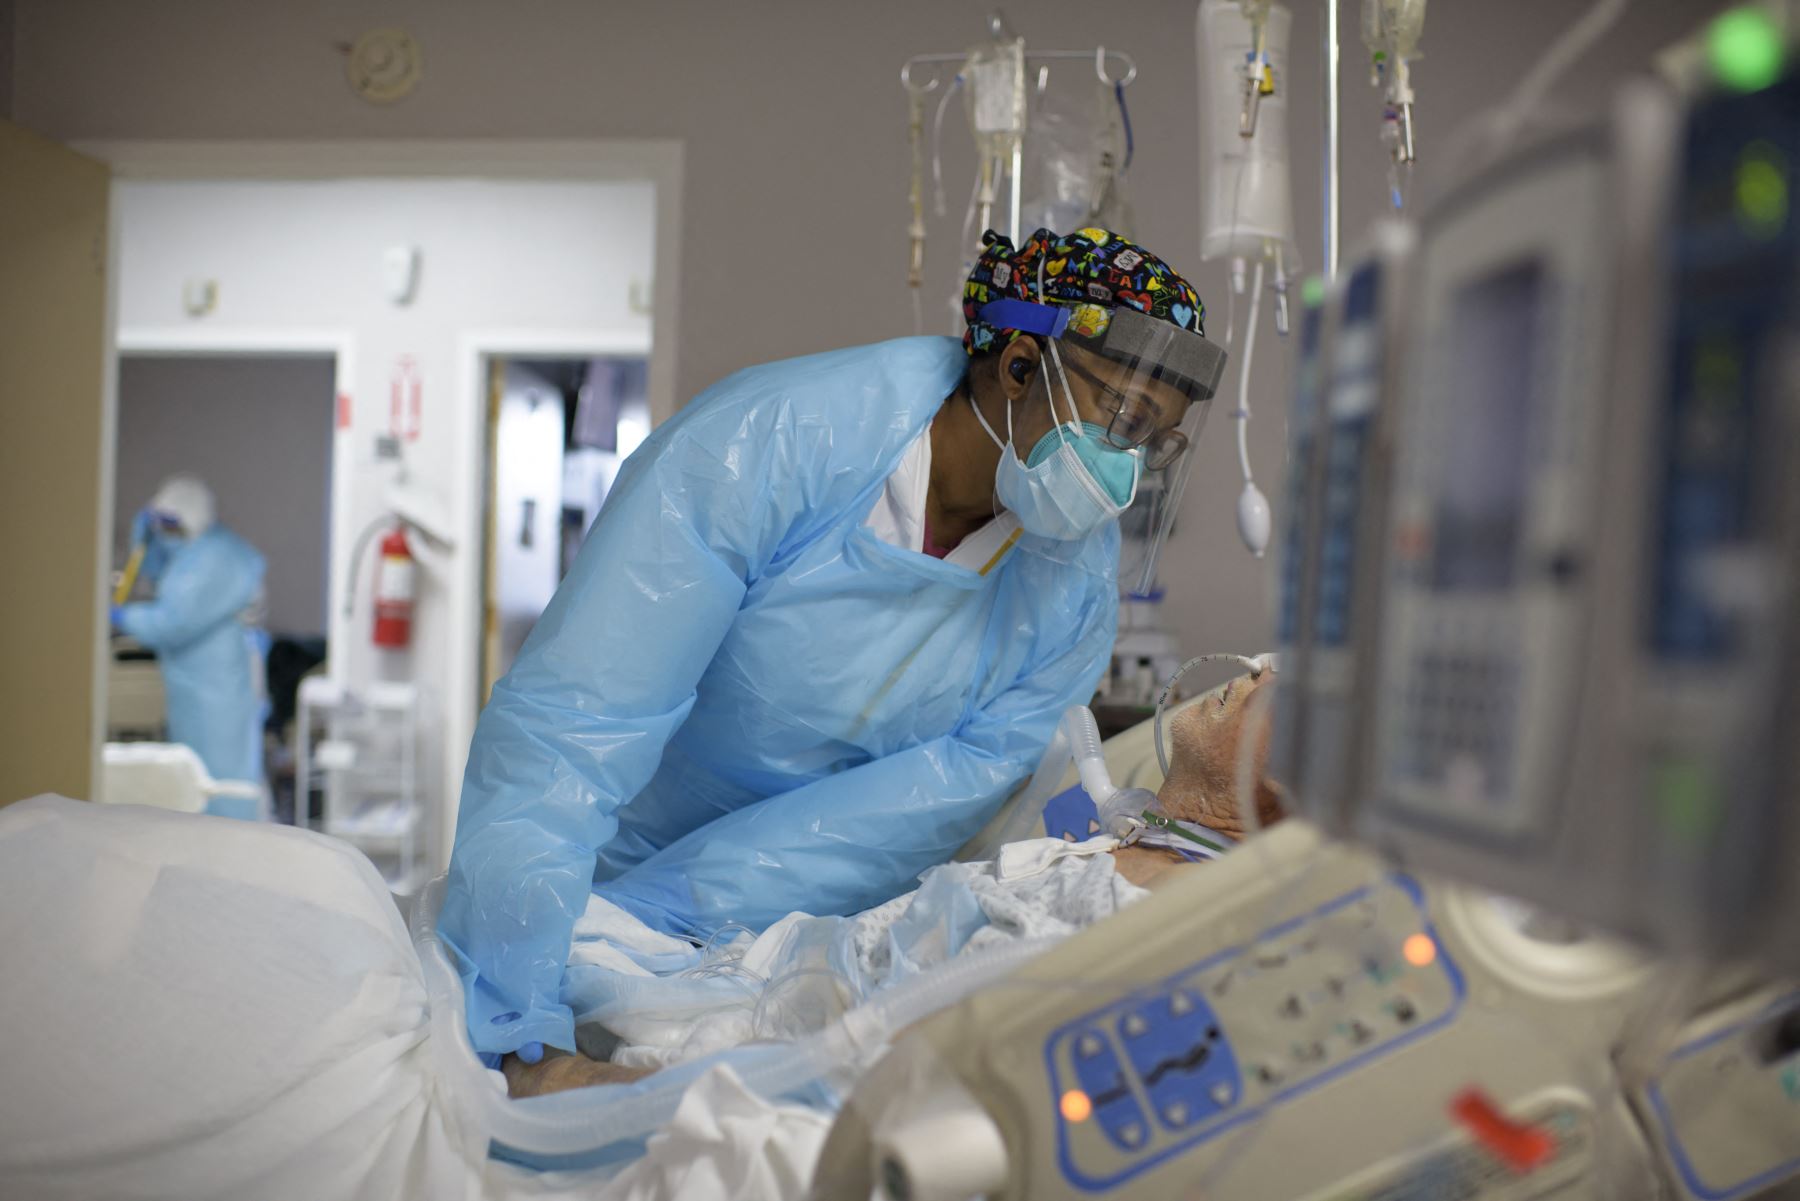 La trabajadora de la salud Demetra Ransom consuela a un paciente en la sala Covid-19 del United Memorial Medical Center en Houston, Texas. Foto: AFP